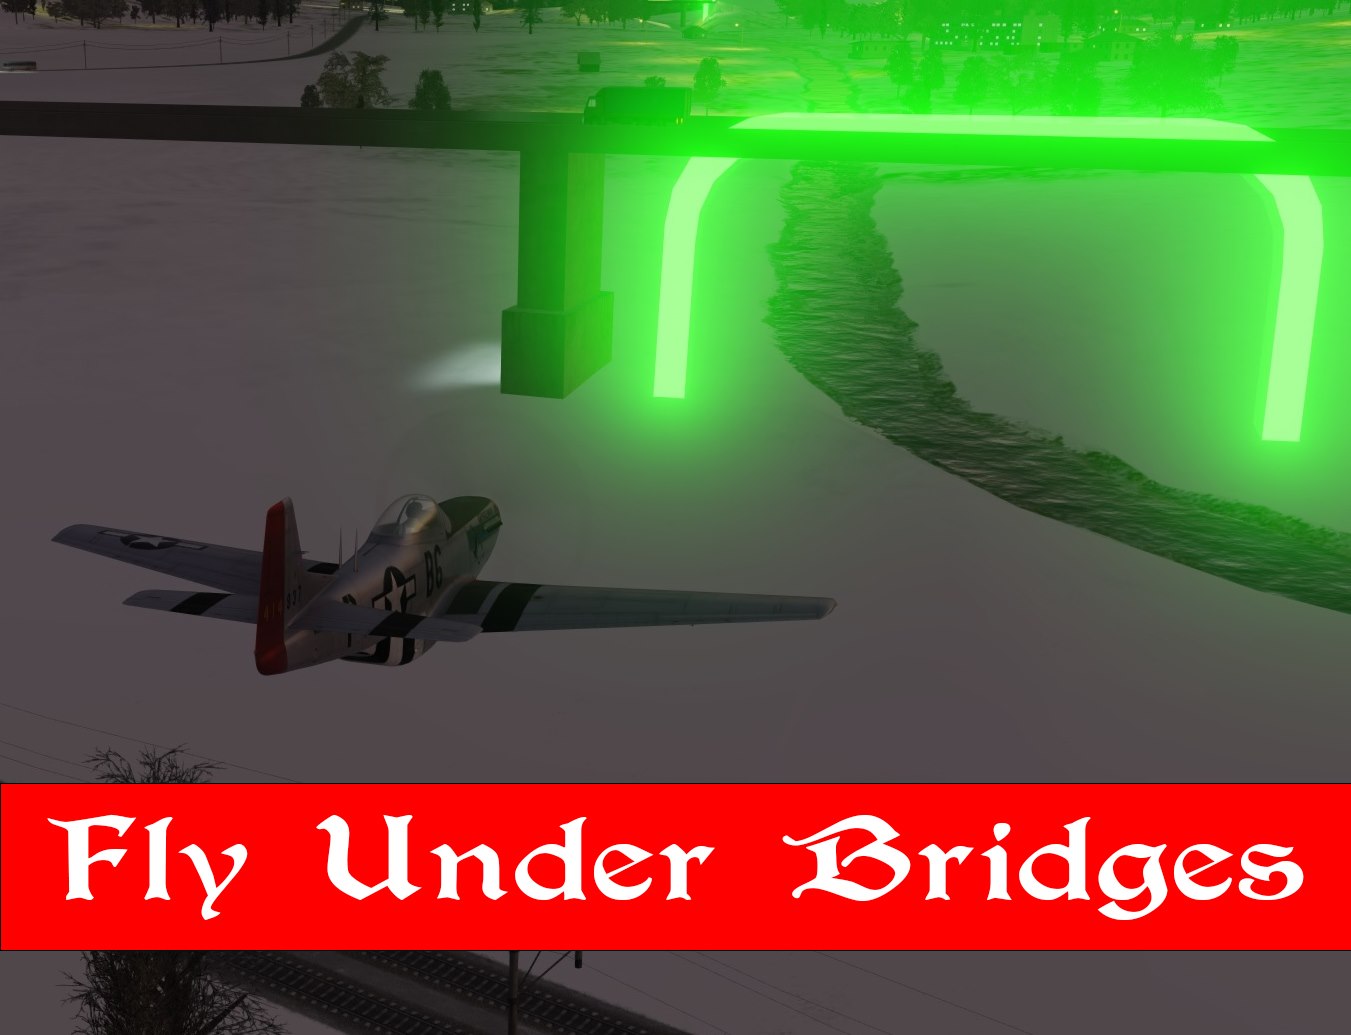 Tf-51D Fly Under bridges